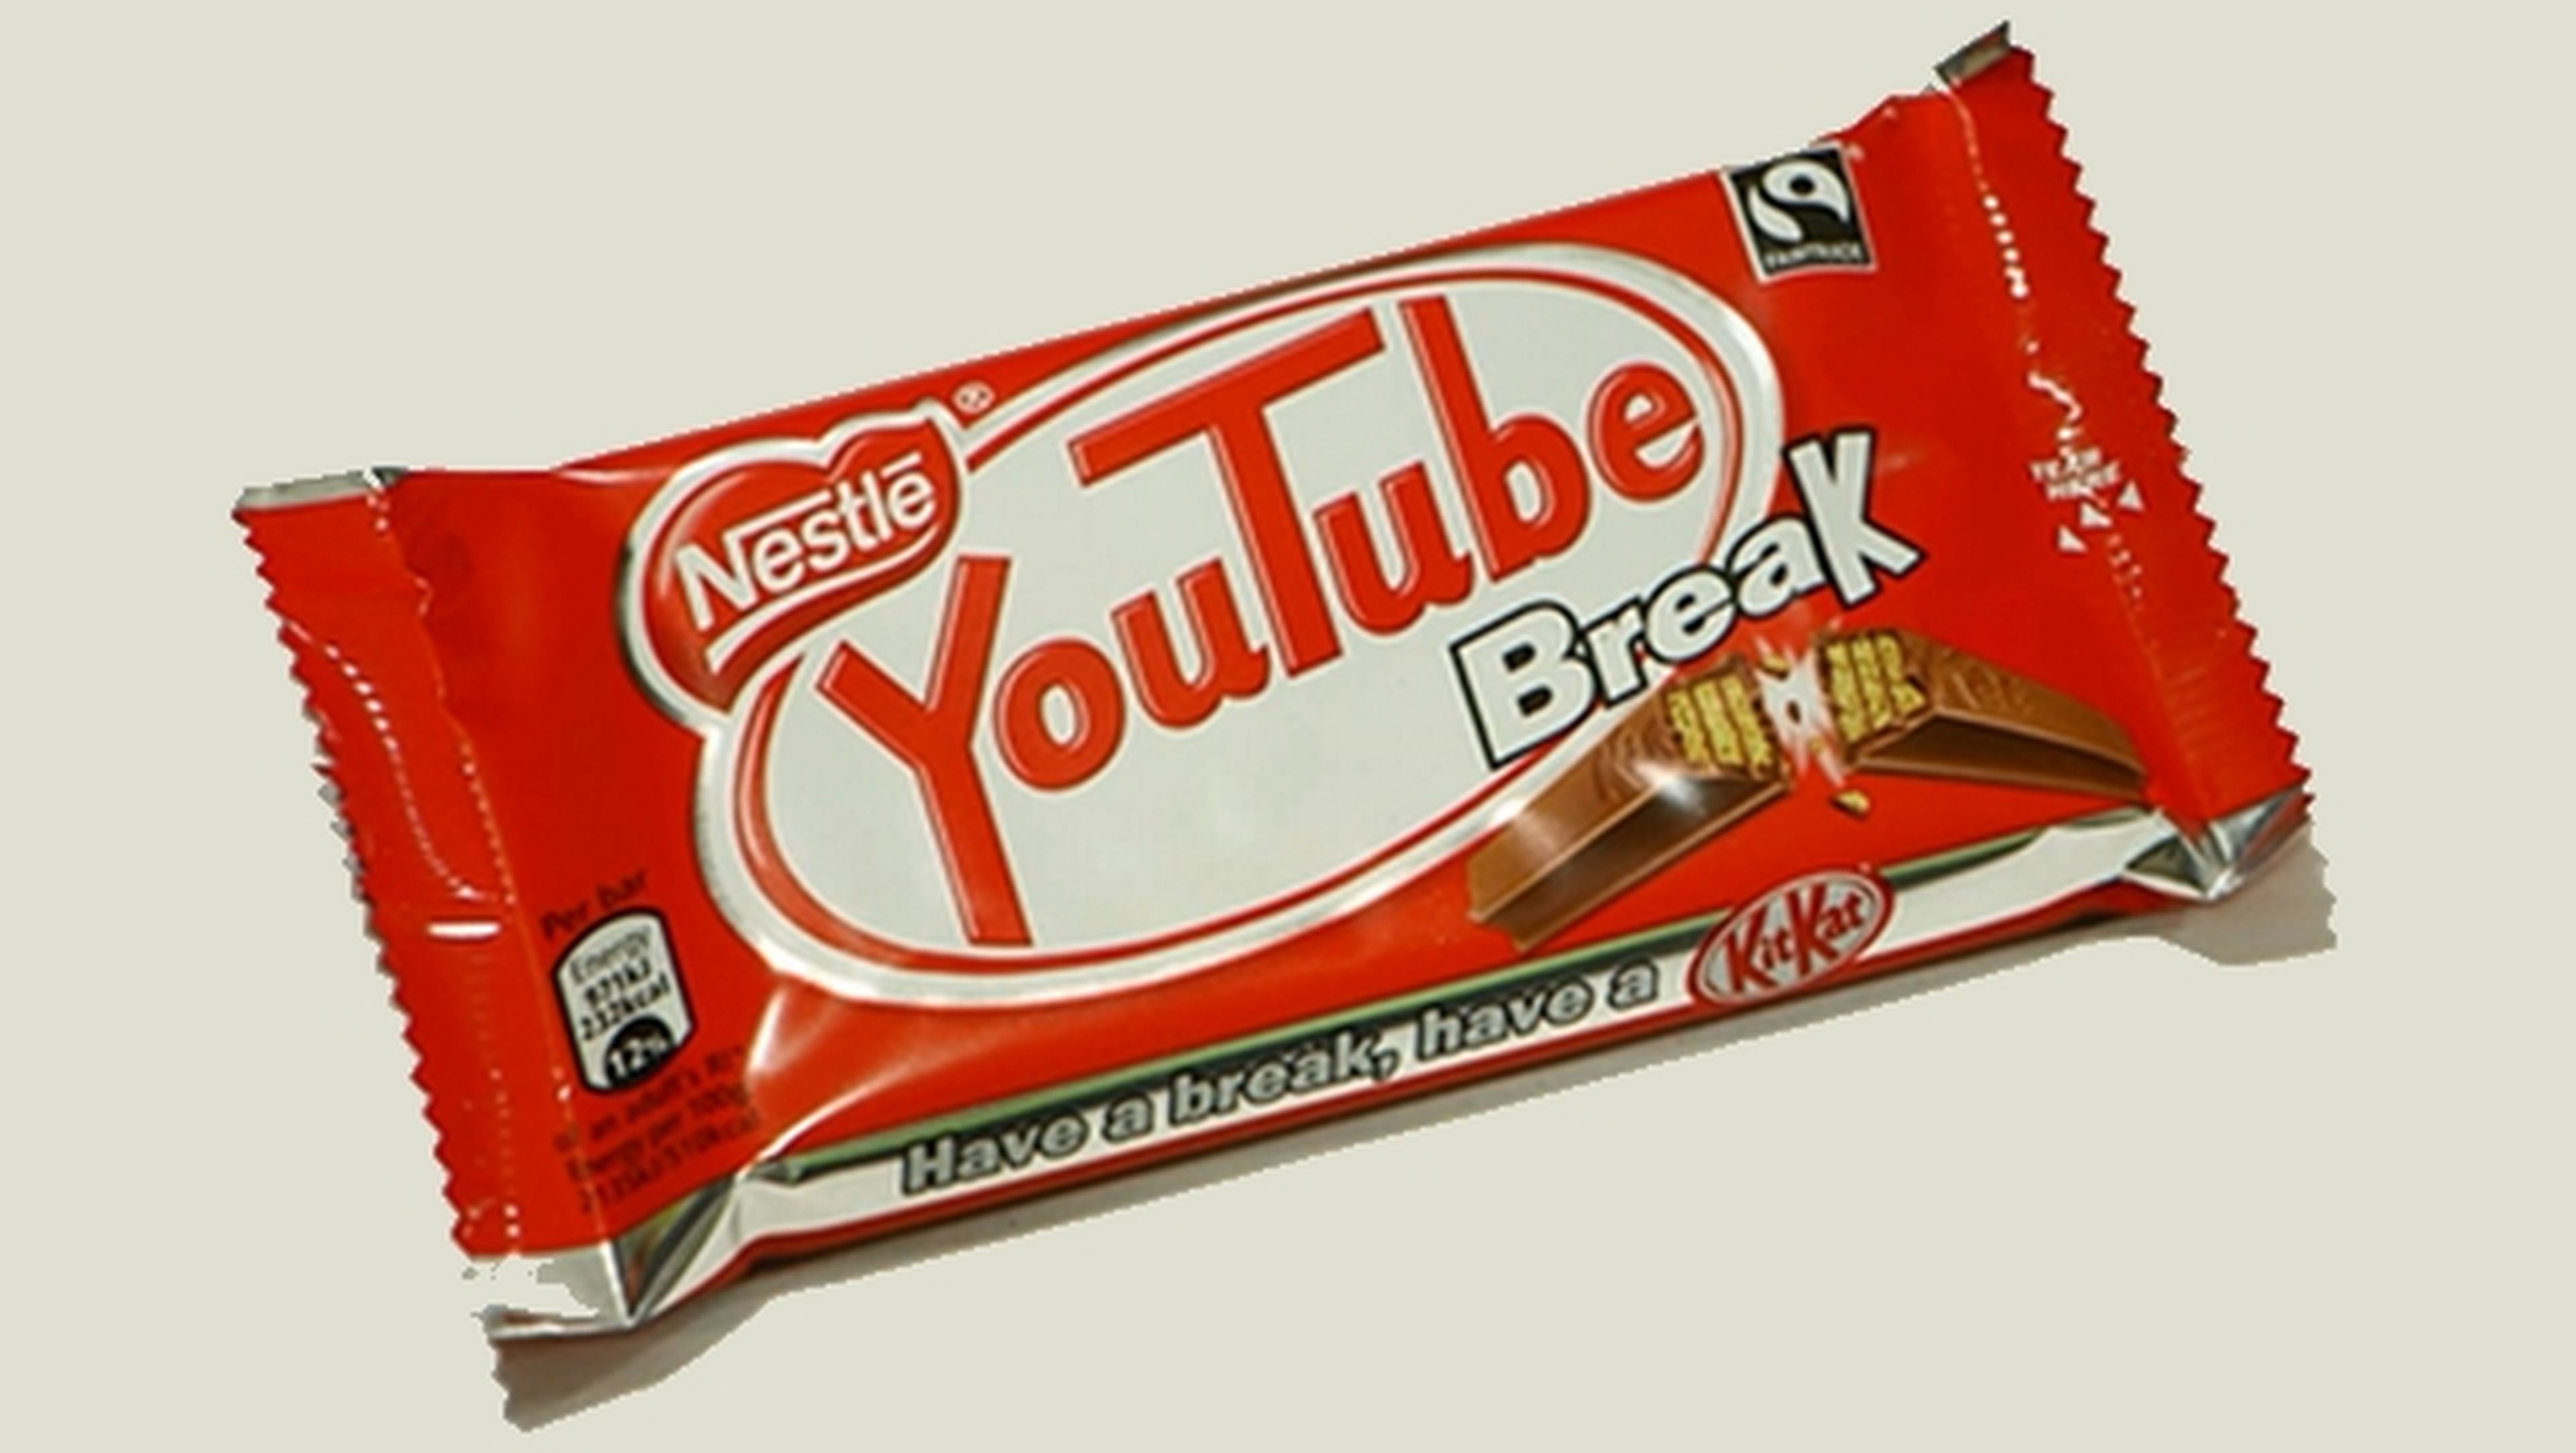 Las barritas Kit Kat de Nestlé se llamarán YouTube Break.